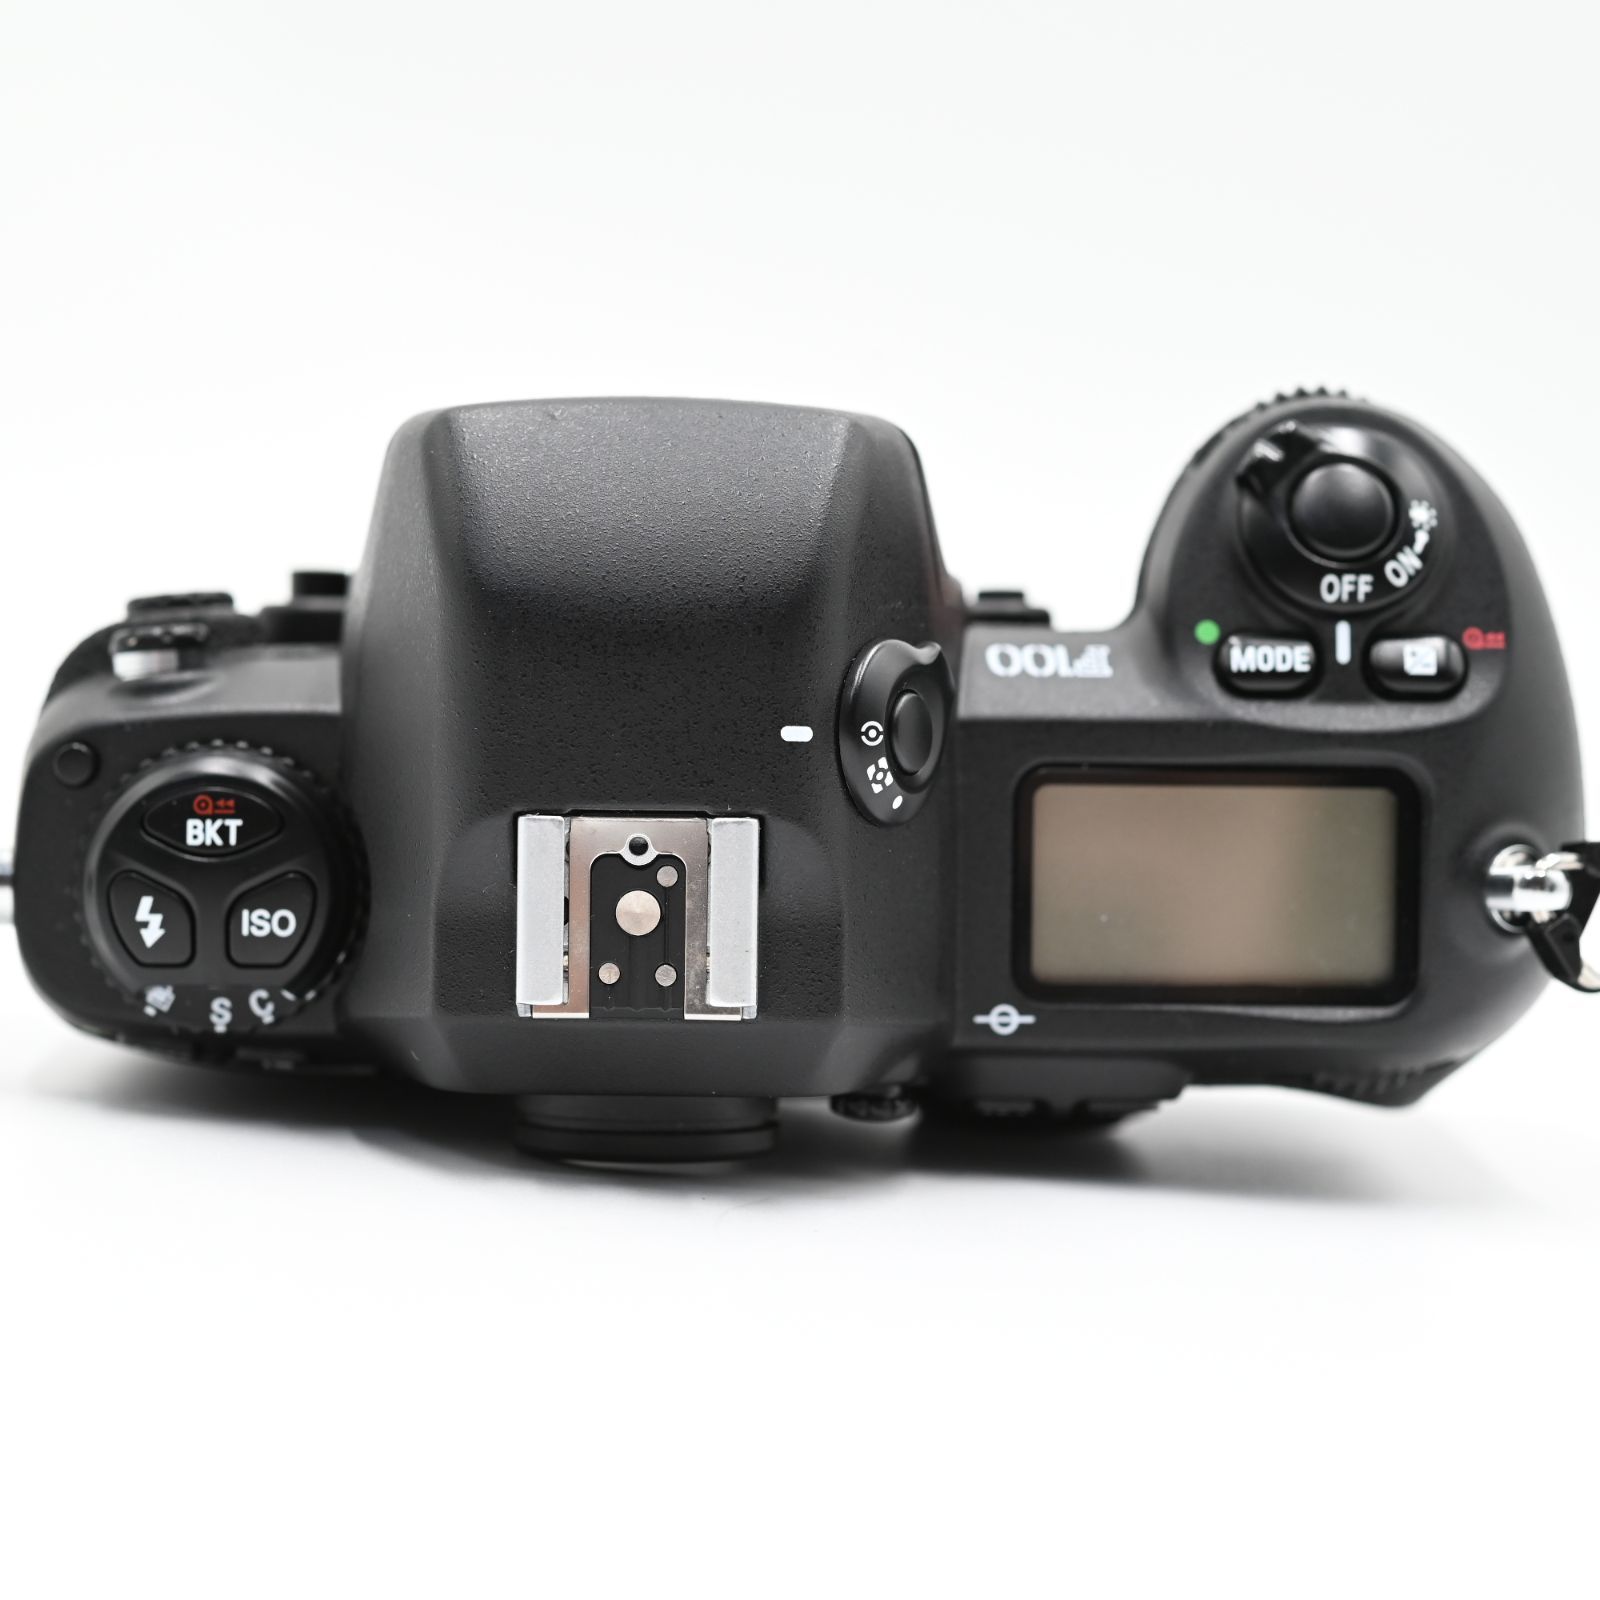 新品級】Nikon ニコン AF 一眼レフカメラ ボディ本体 F100 BLACK #589